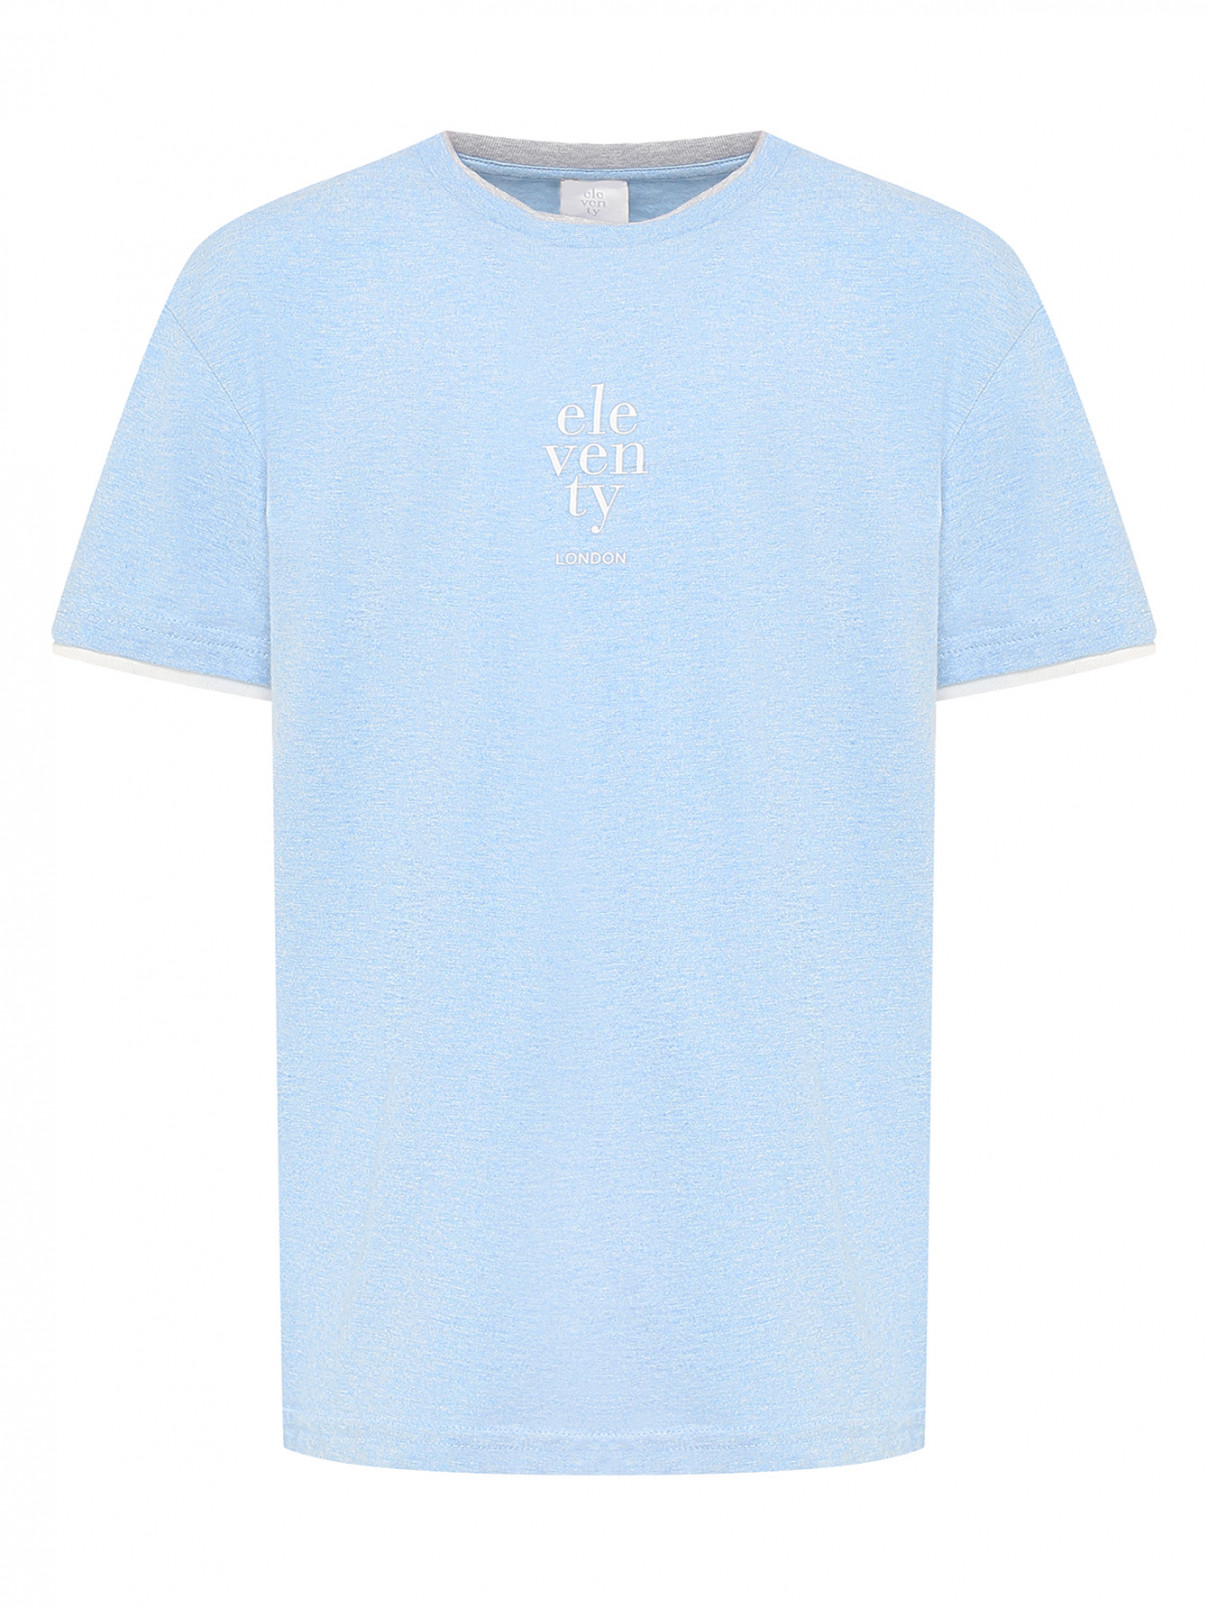 Хлопковая футболка с принтом Eleventy  –  Общий вид  – Цвет:  Синий